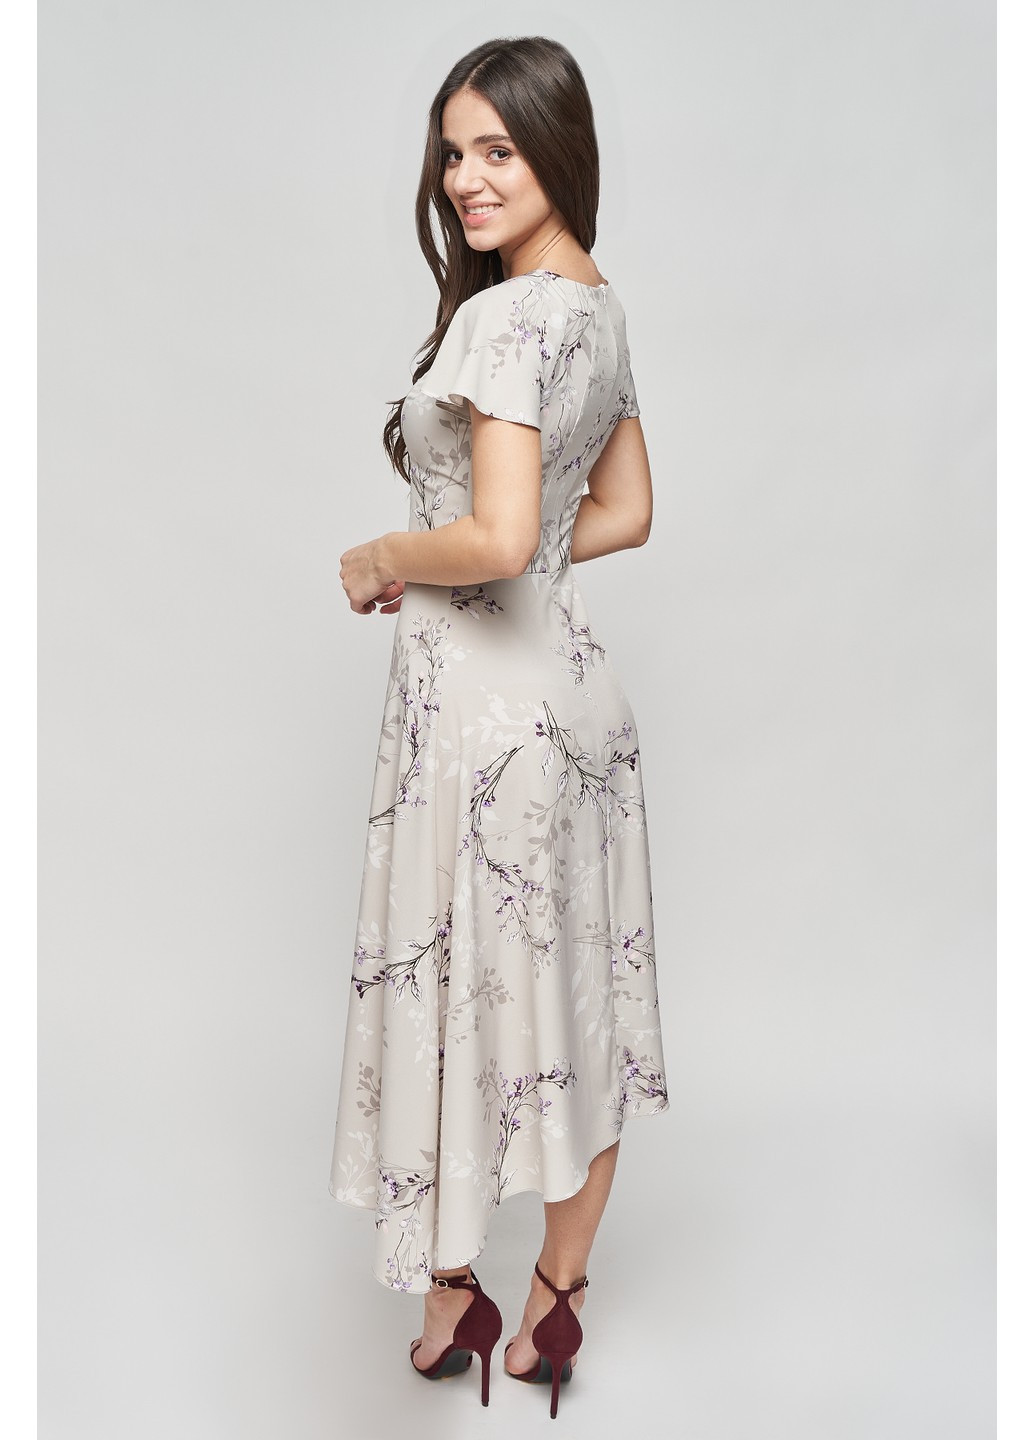 Комбинированное коктейльное платье чиа клеш, с пышной юбкой BYURSE с цветочным принтом